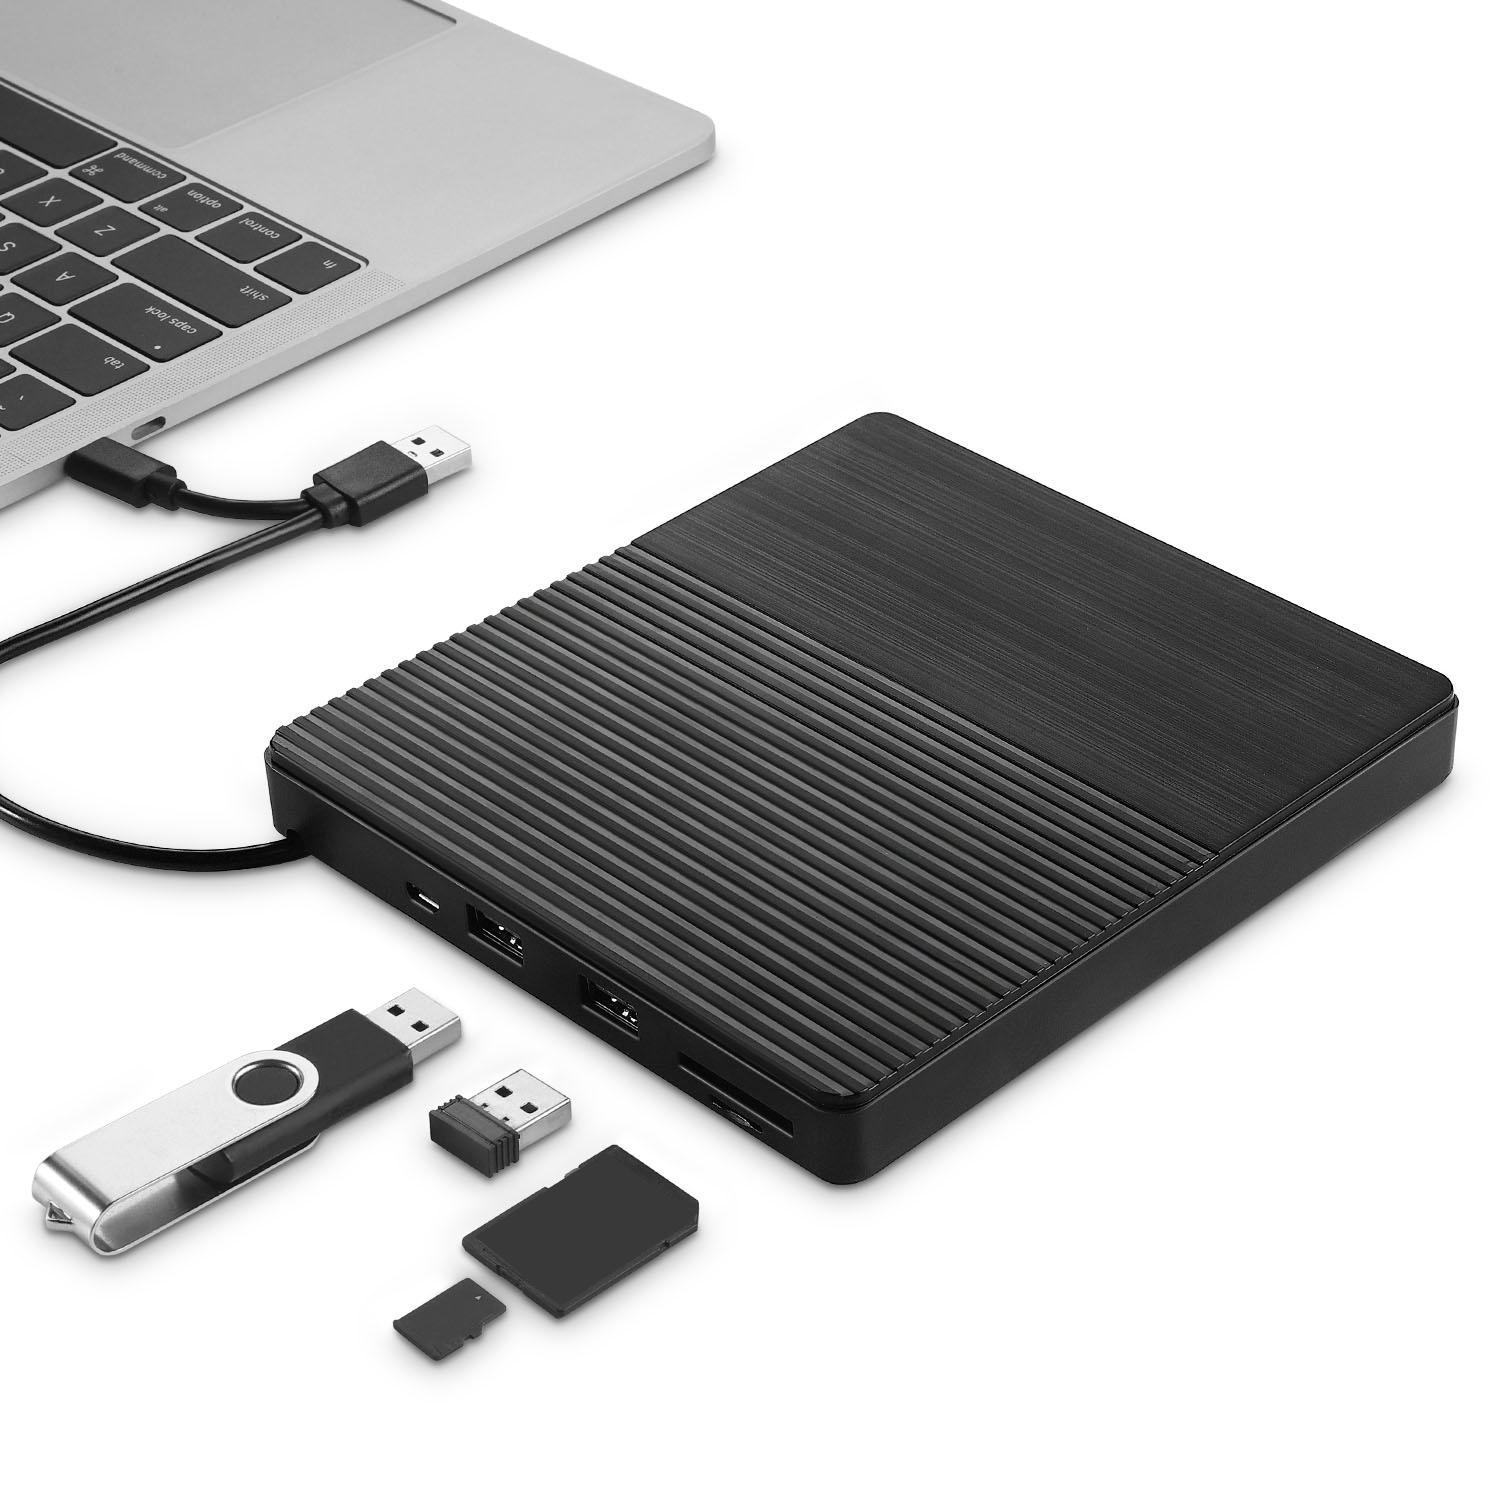 超薄型USB 3.0外付け光学式ドライブUSB-CバーナーノートブックDVD-RW DVD / CD MacBook LaptopType-C CDドライバー